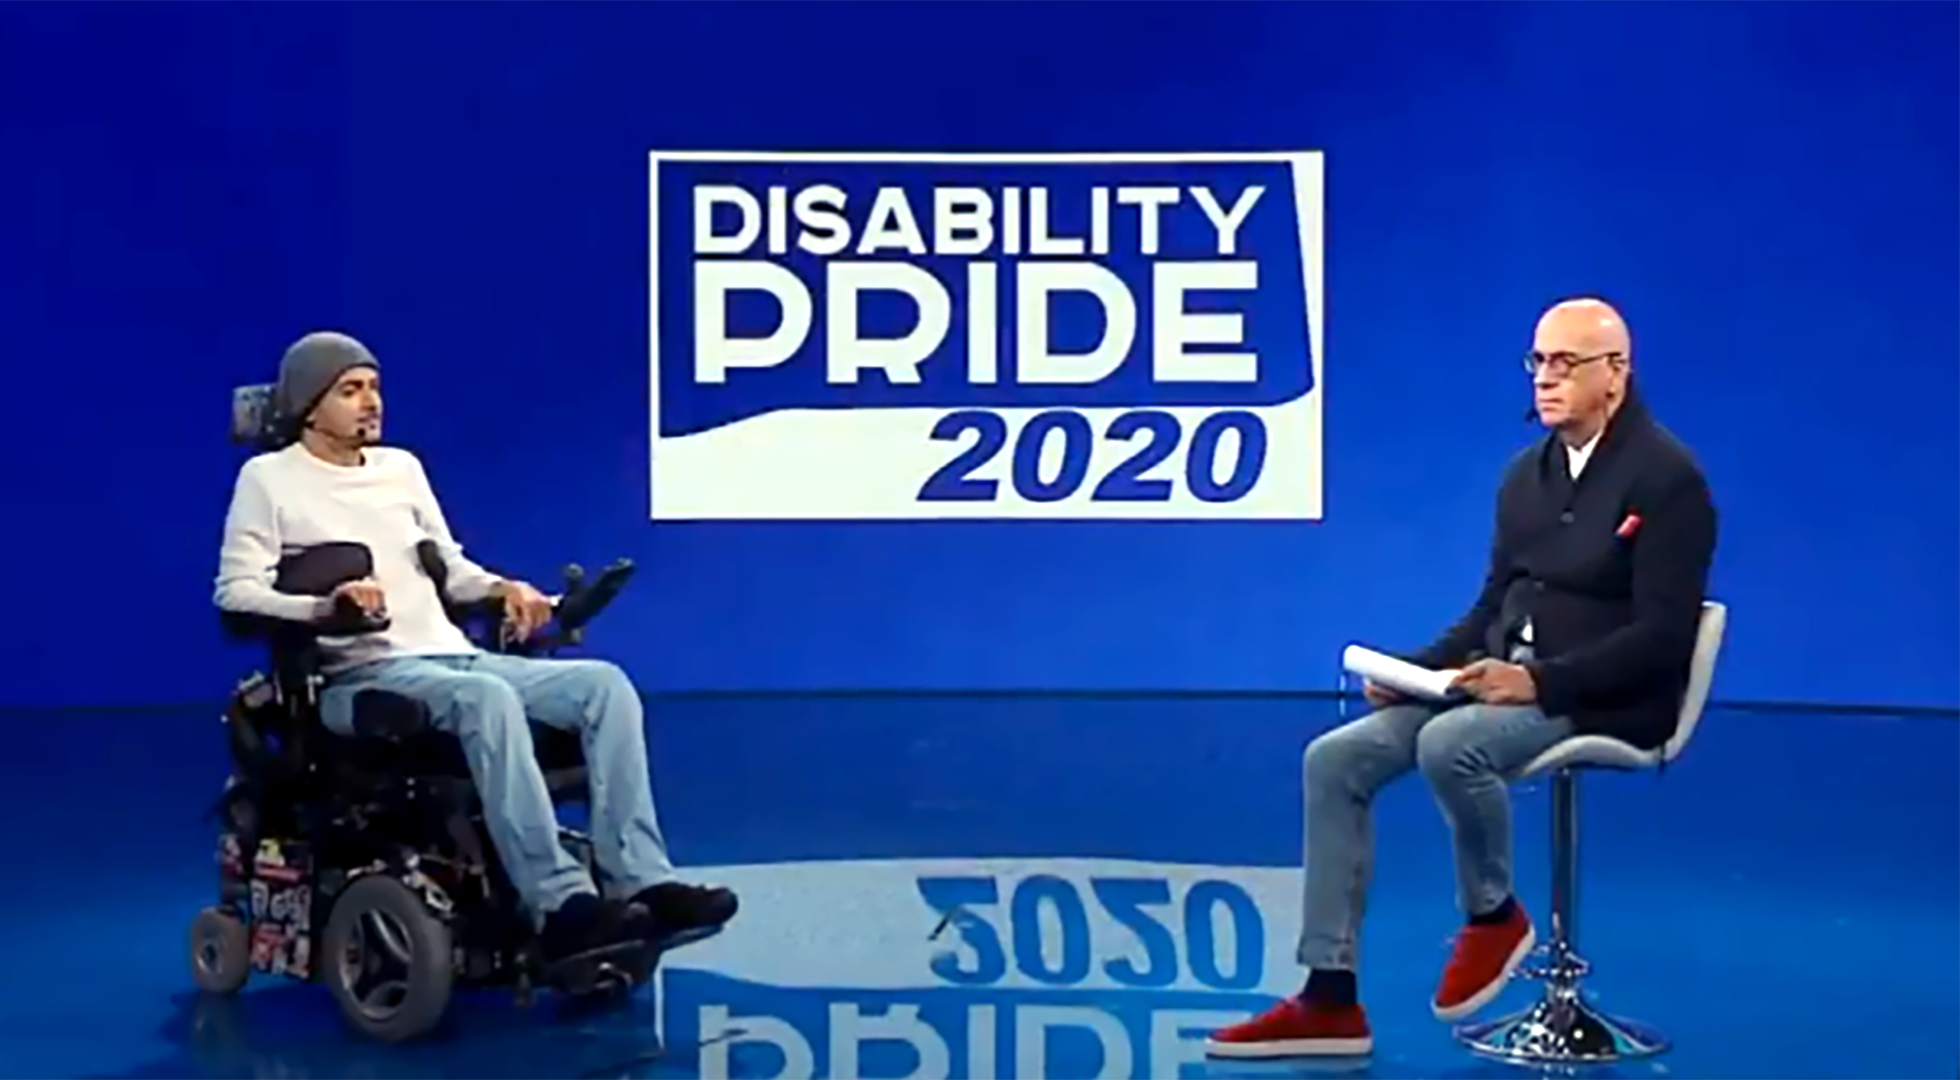 Immagine del Disability Pride 2020 in diretta su RaiPlay, con i conduttori Carmelo Comisi e Guido Barlozzetti